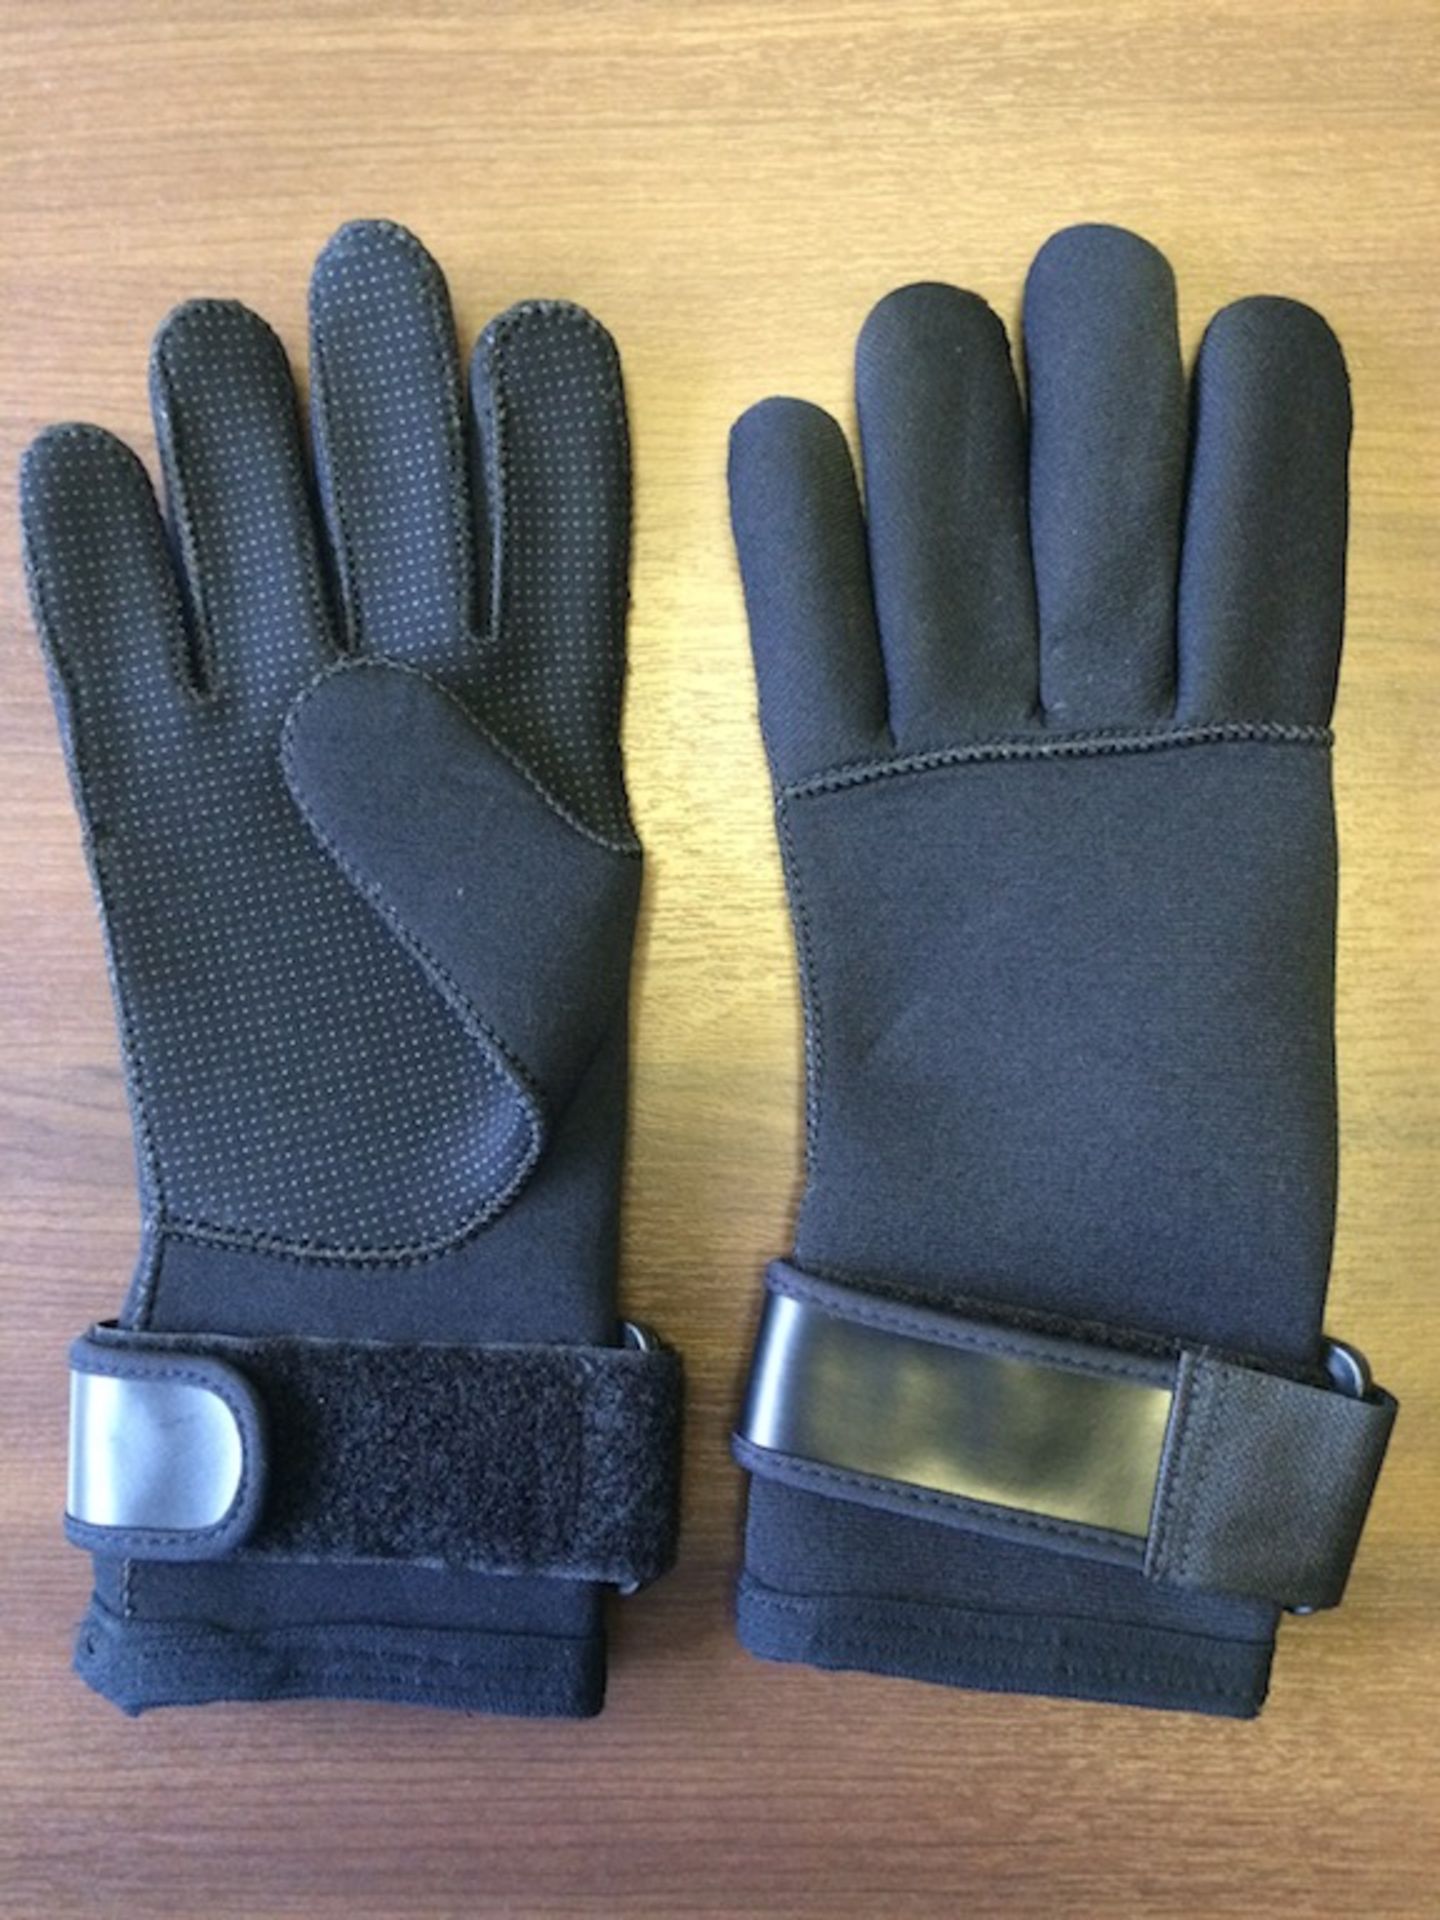 10 x Neoprene Gloves - Small